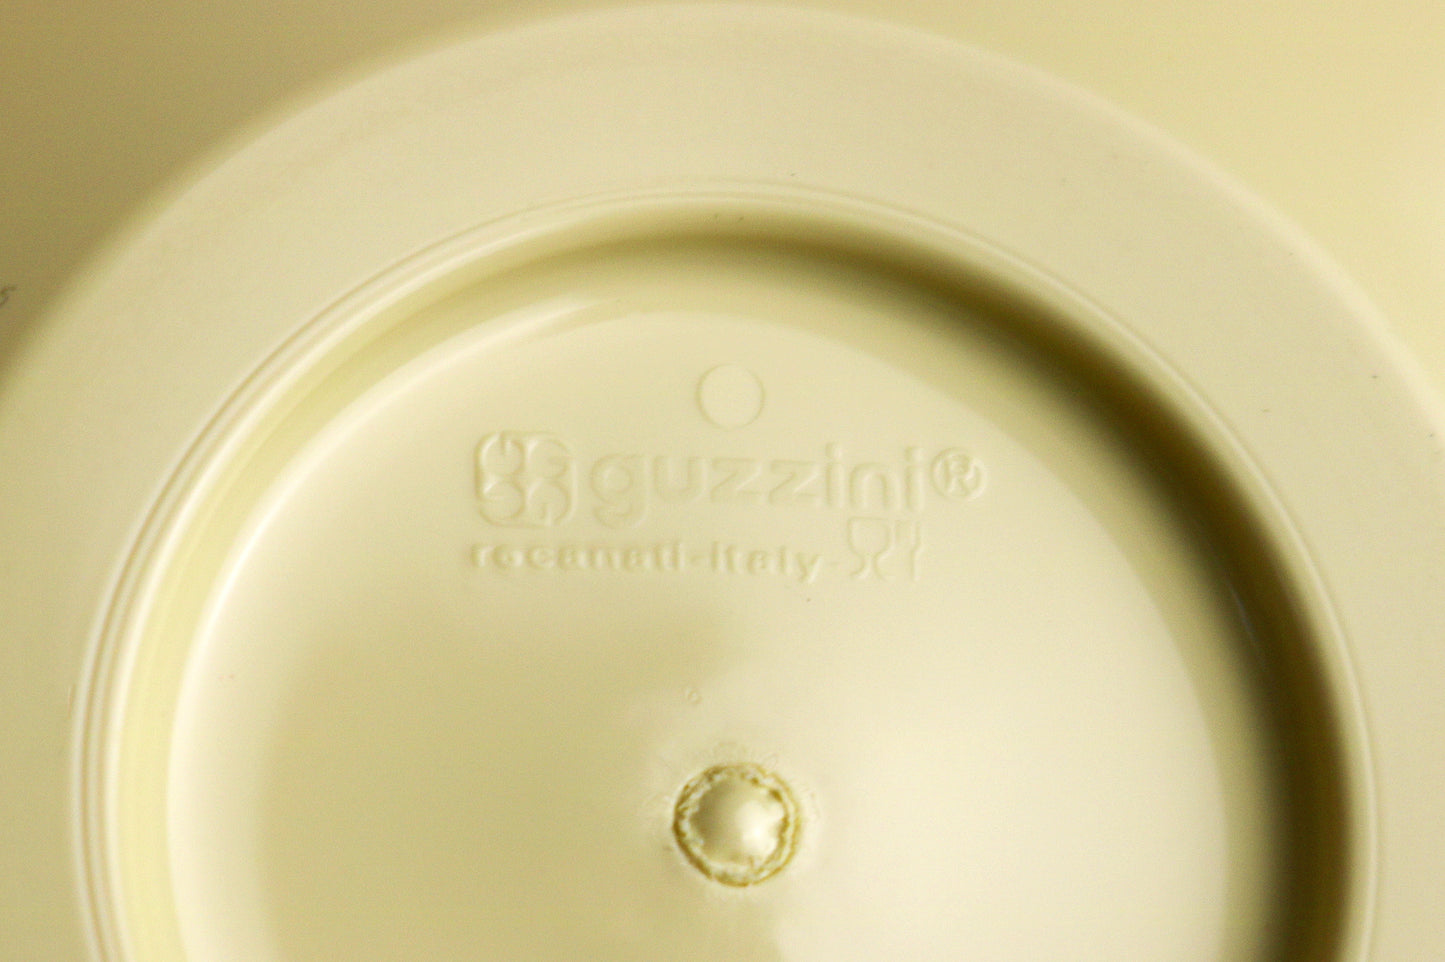 Angletti and Ruzza Zaza espresso cups - cream yellow Fratelli Guzzini